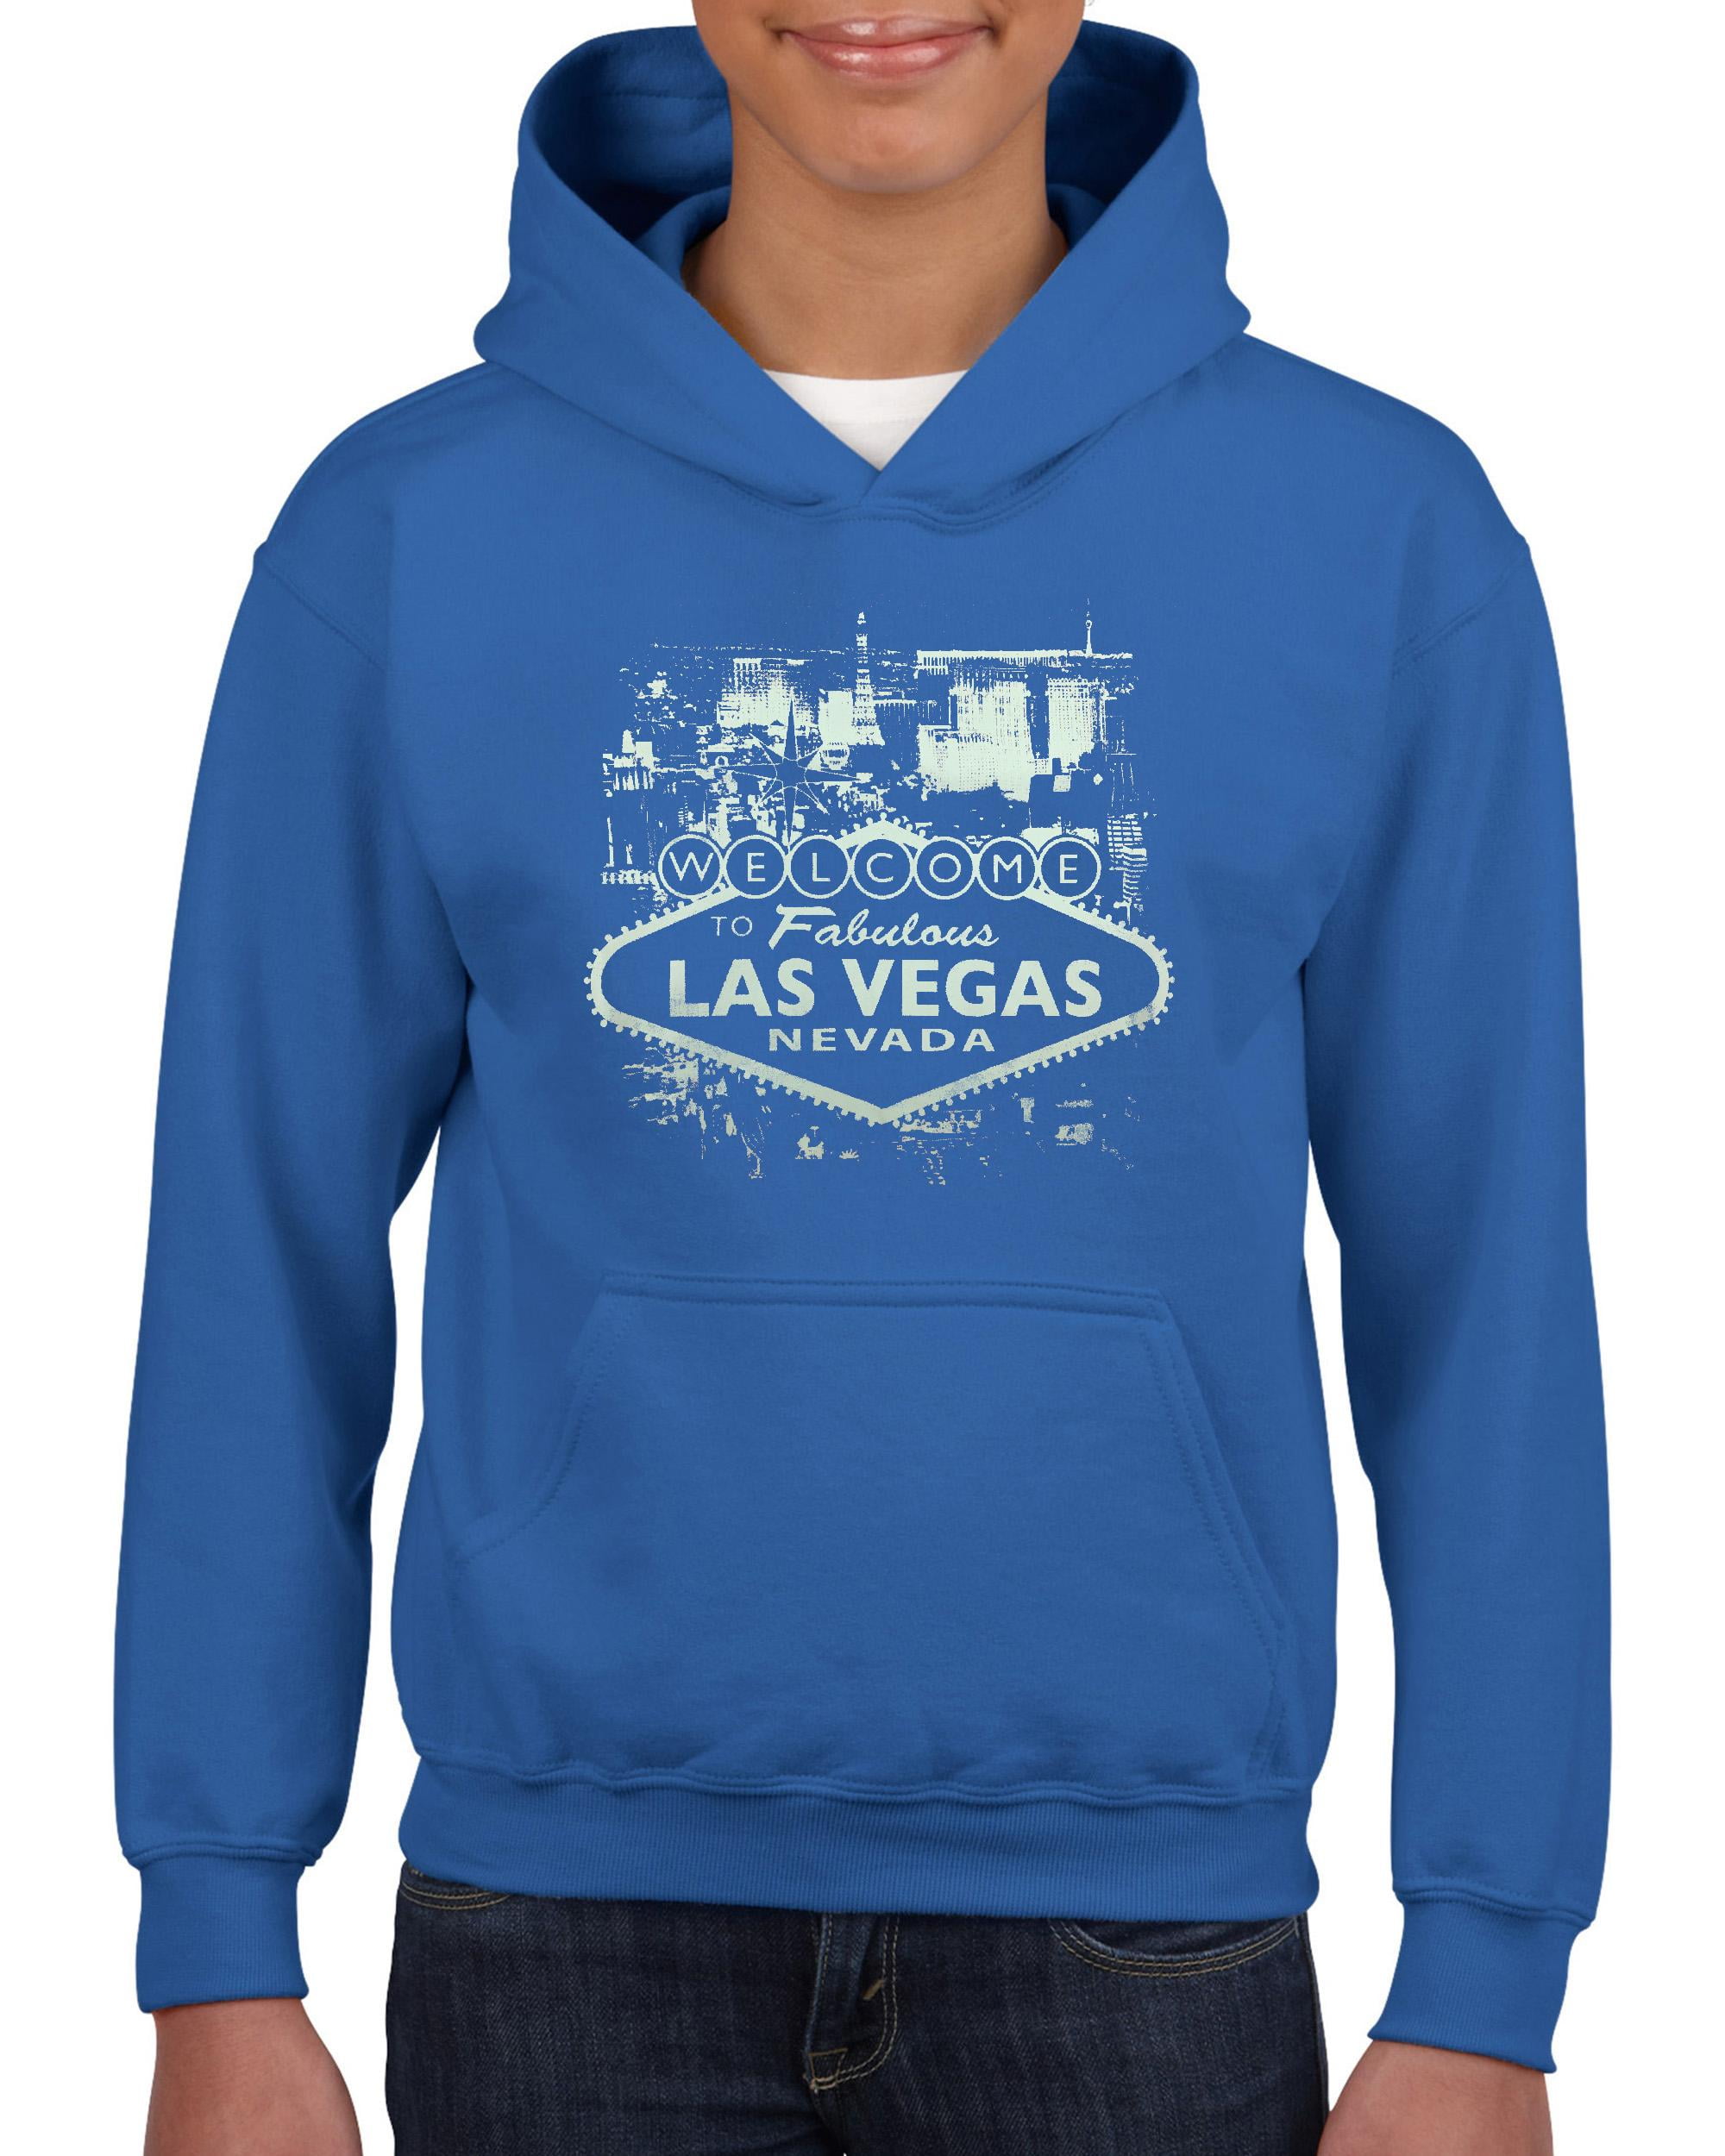 IWPF - Big Girls Hoodies and Sweatshirts - Welcome to Las Vegas Nevada 